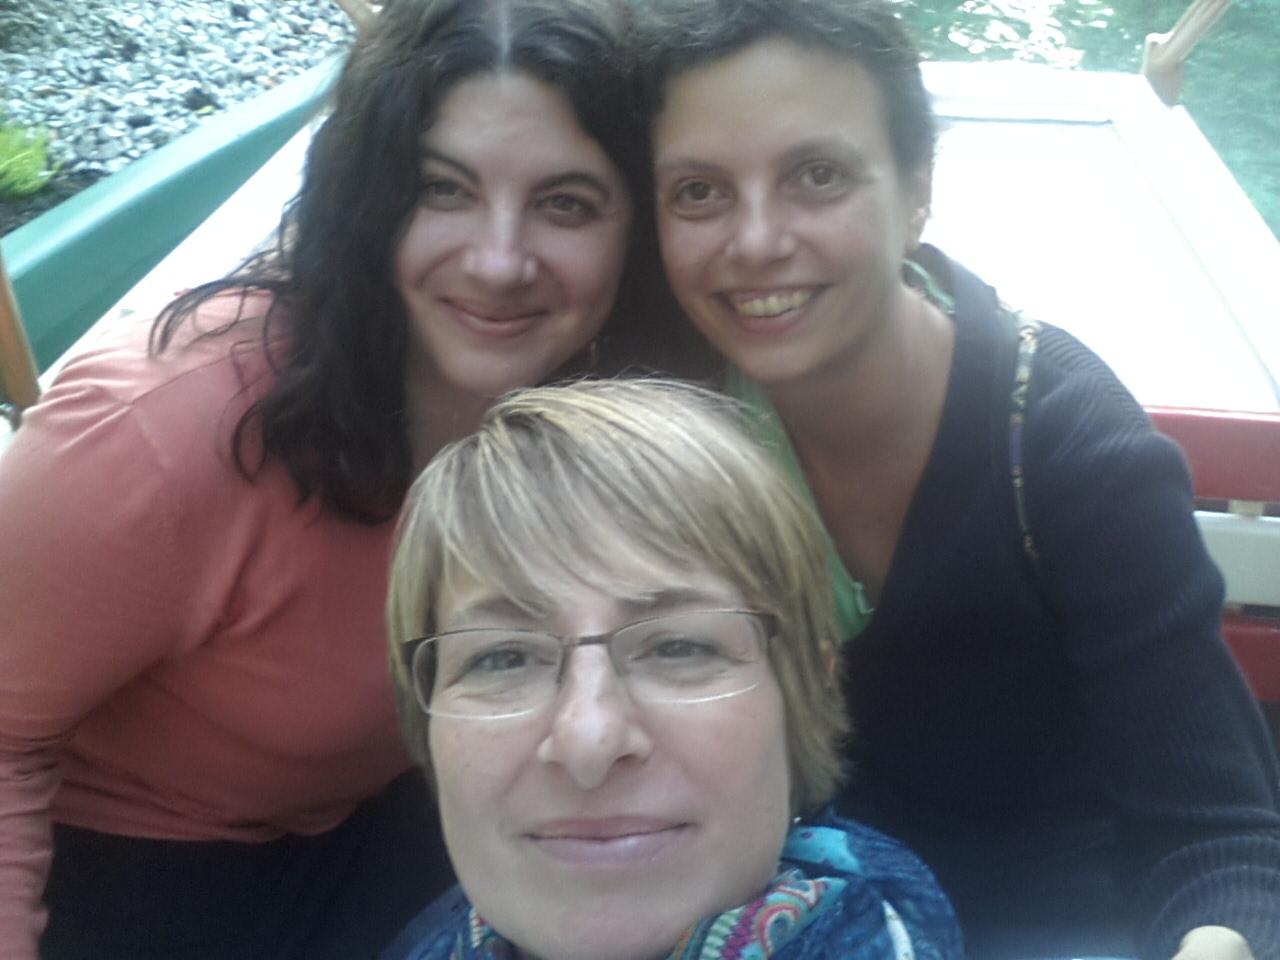 #freundinnentag
Mit meinen zwei besten Freundinnen im Europa Park Rust. Wir kennen uns seit der Grundschule. :-*
